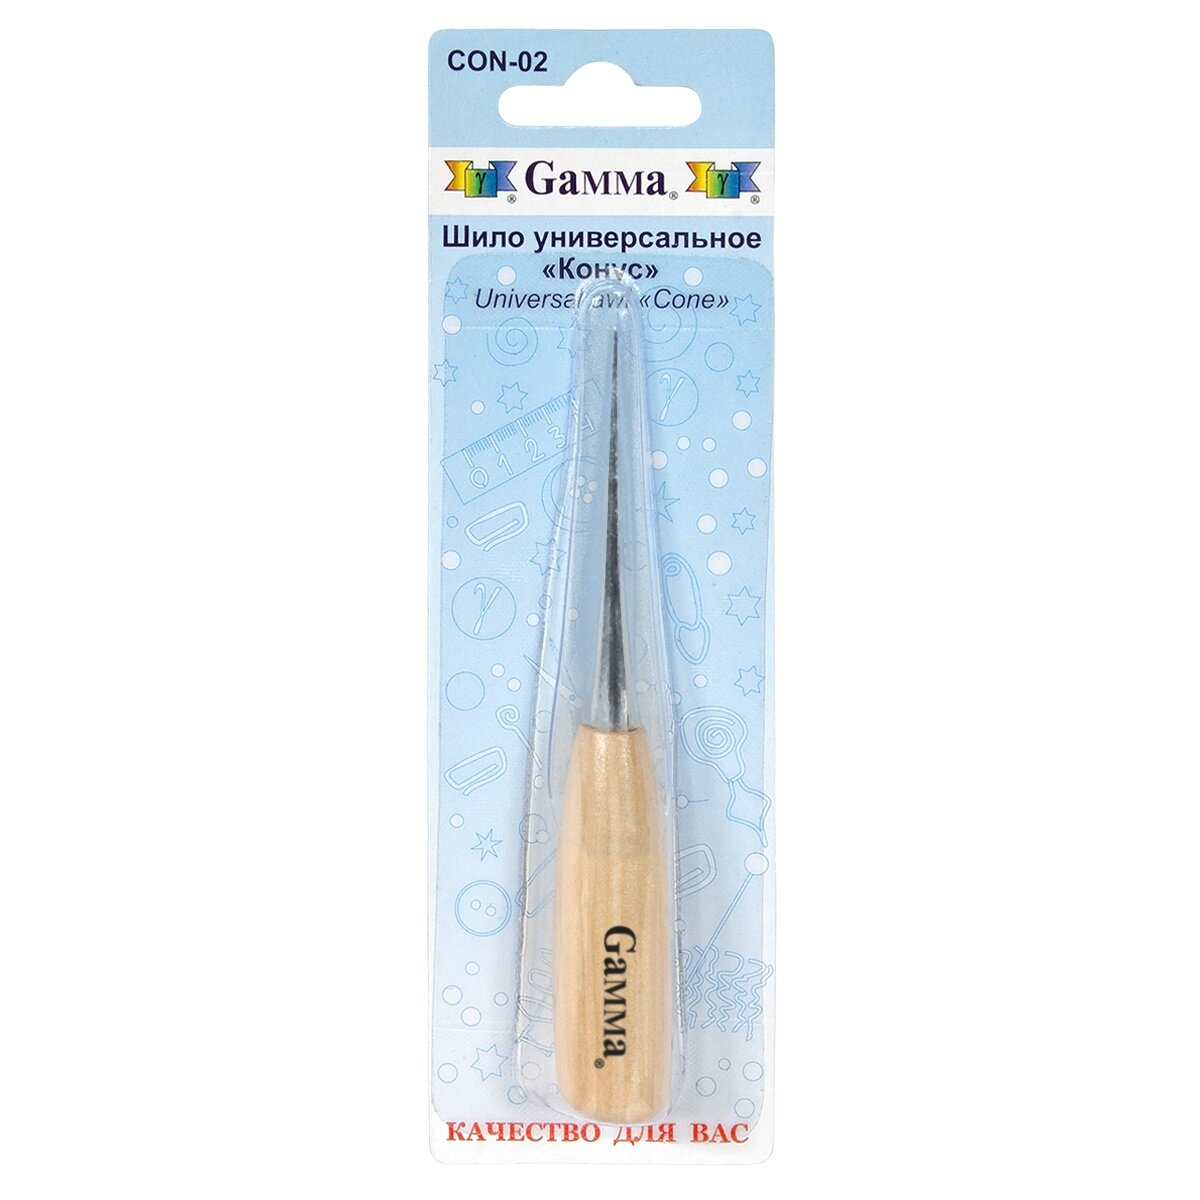 Шило универсальное Gamma "Конус", с деревянной ручкой, в блистере (CON-02)